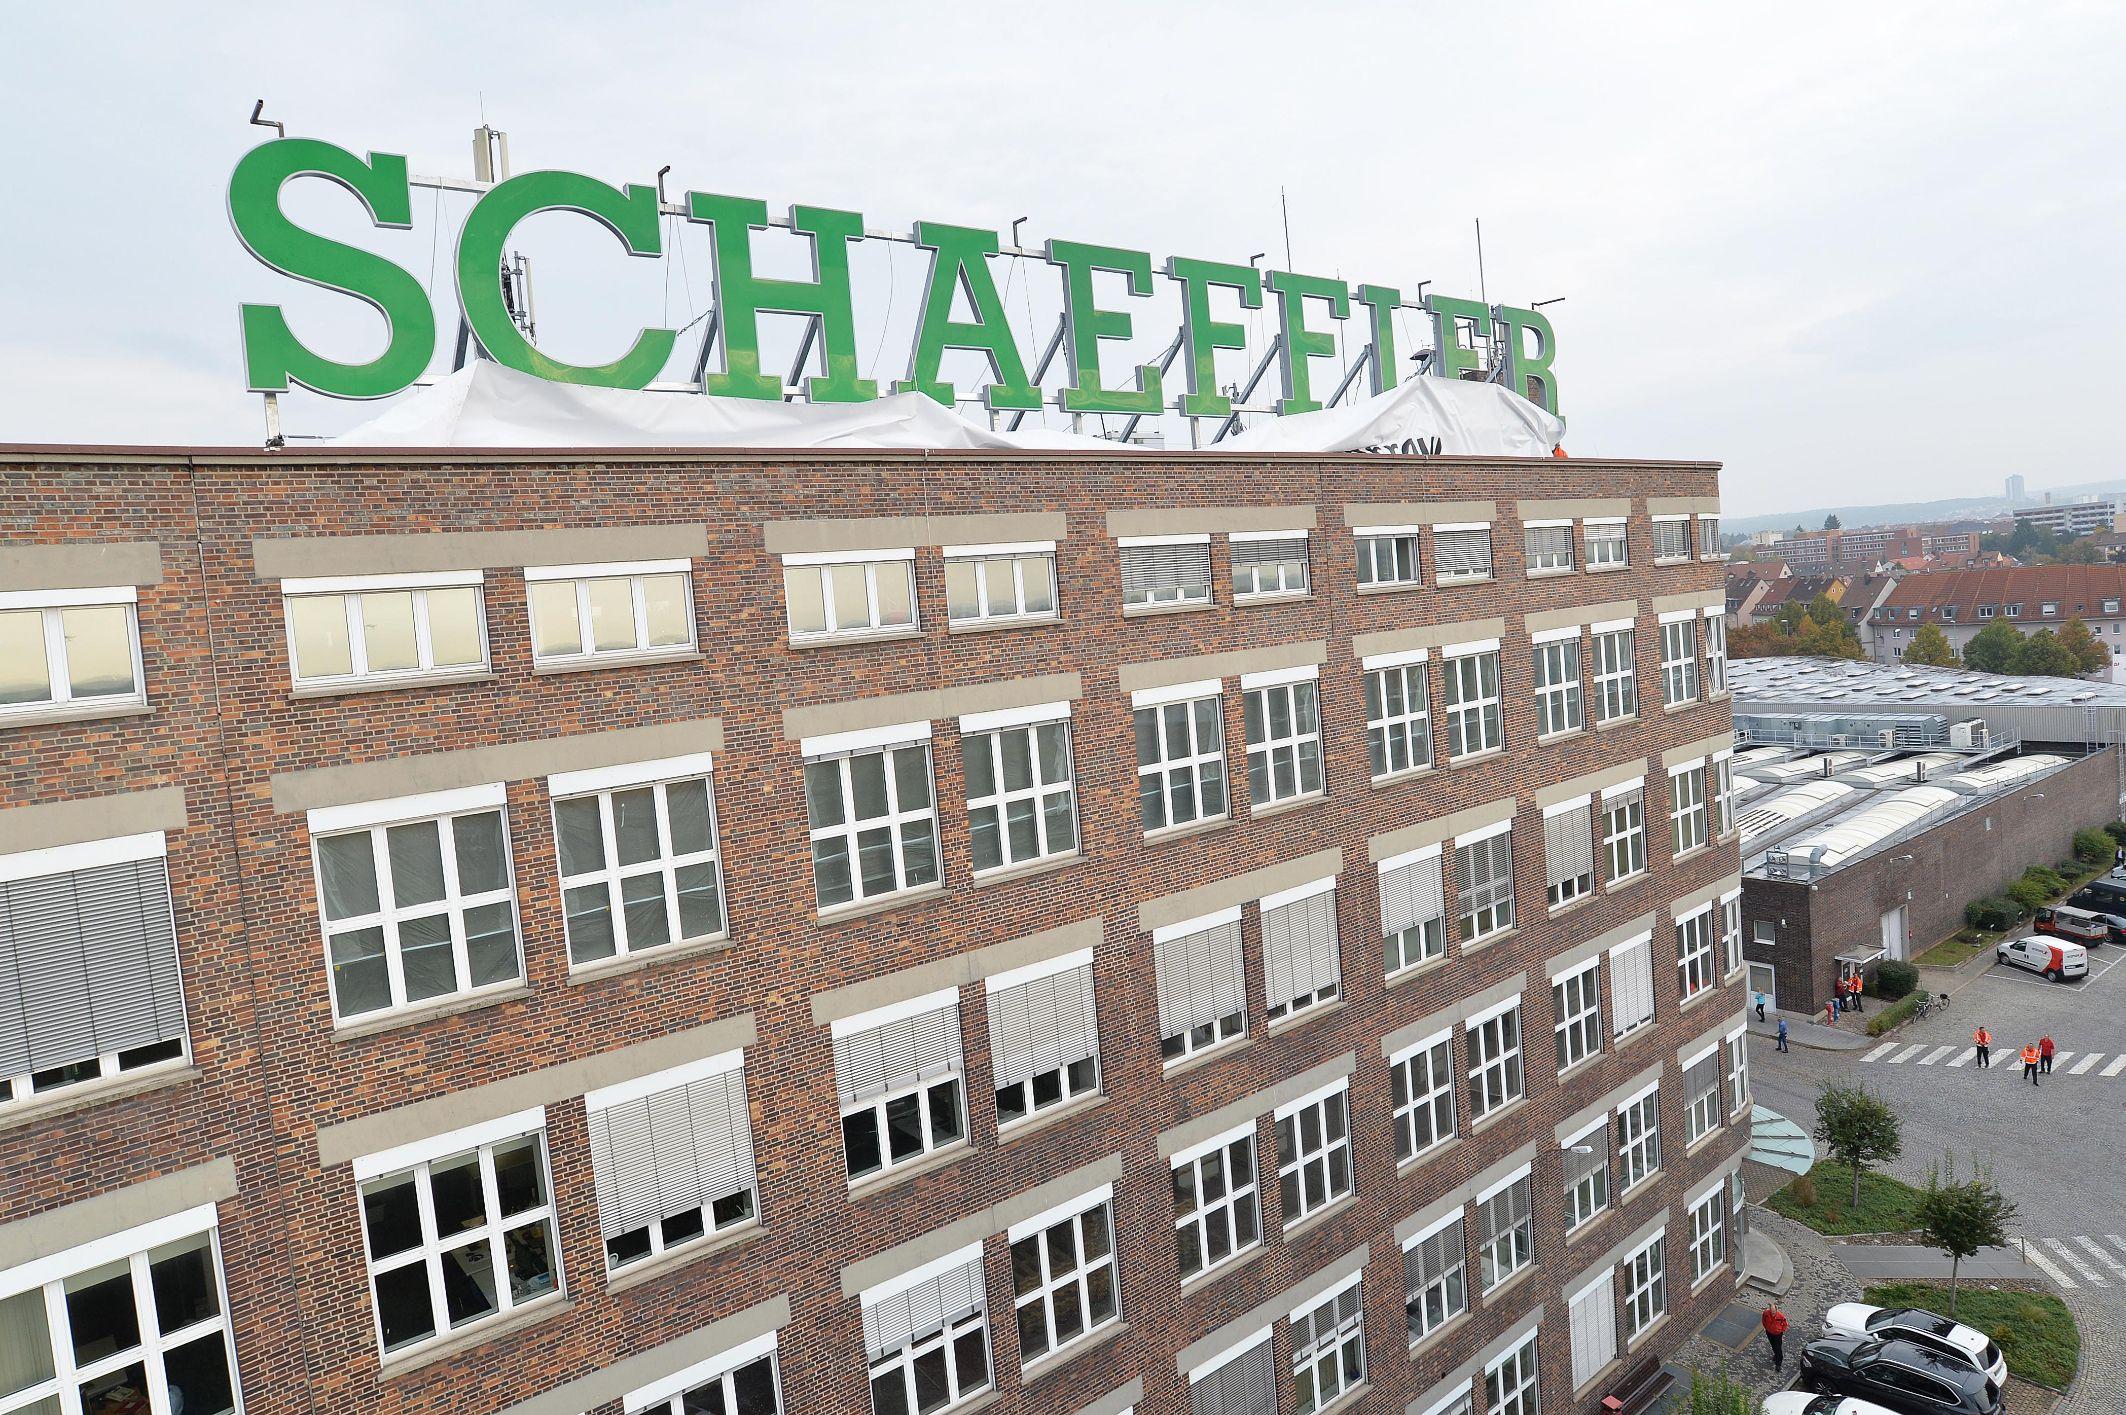 Schaeffler Logo - IDAM Germany. Press Office. Schaeffler Enhances its Brand